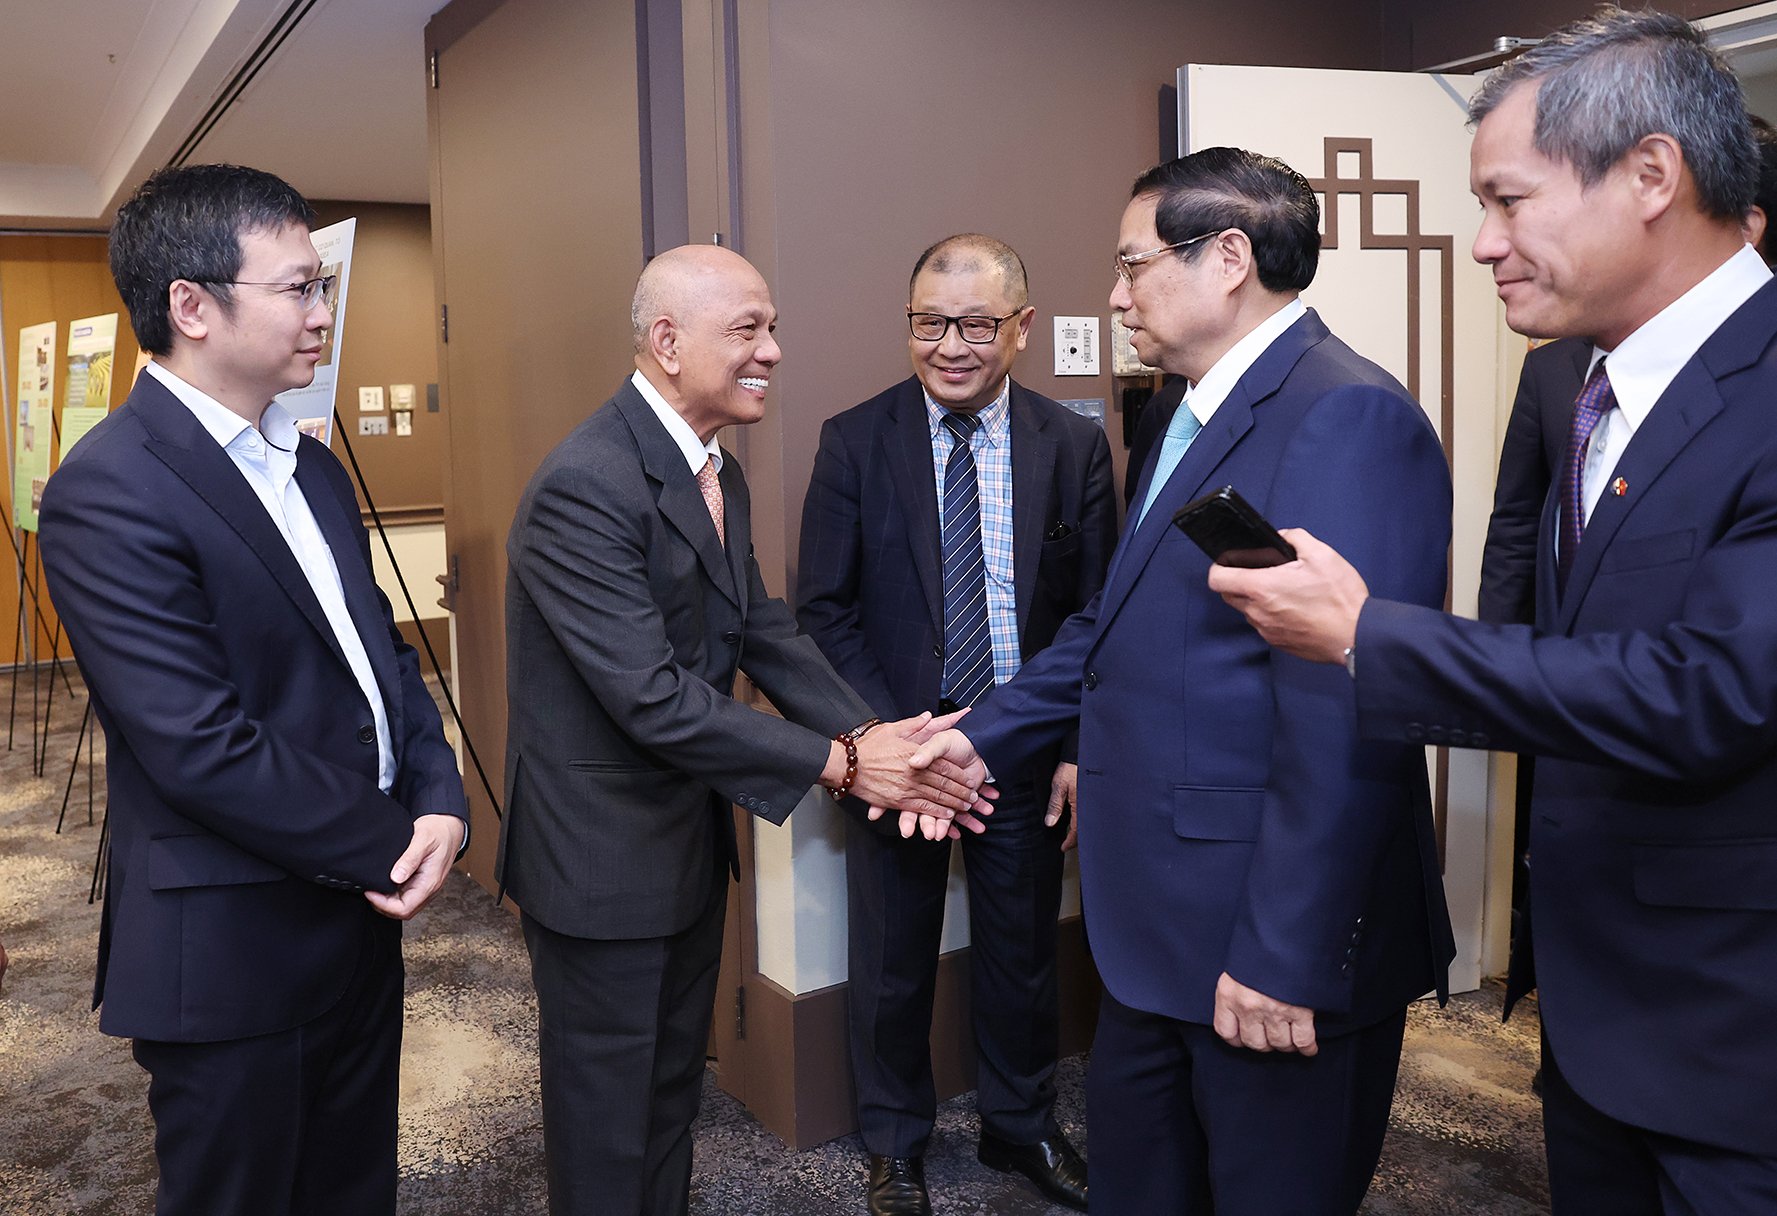 Thủ tướng Phạm Minh Chính thăm hỏi, trò chuyện với lãnh đạo và các thành viên Hội Doanh nhân Việt Nam tại Australia - Ảnh: VGP/Nhật Bắc